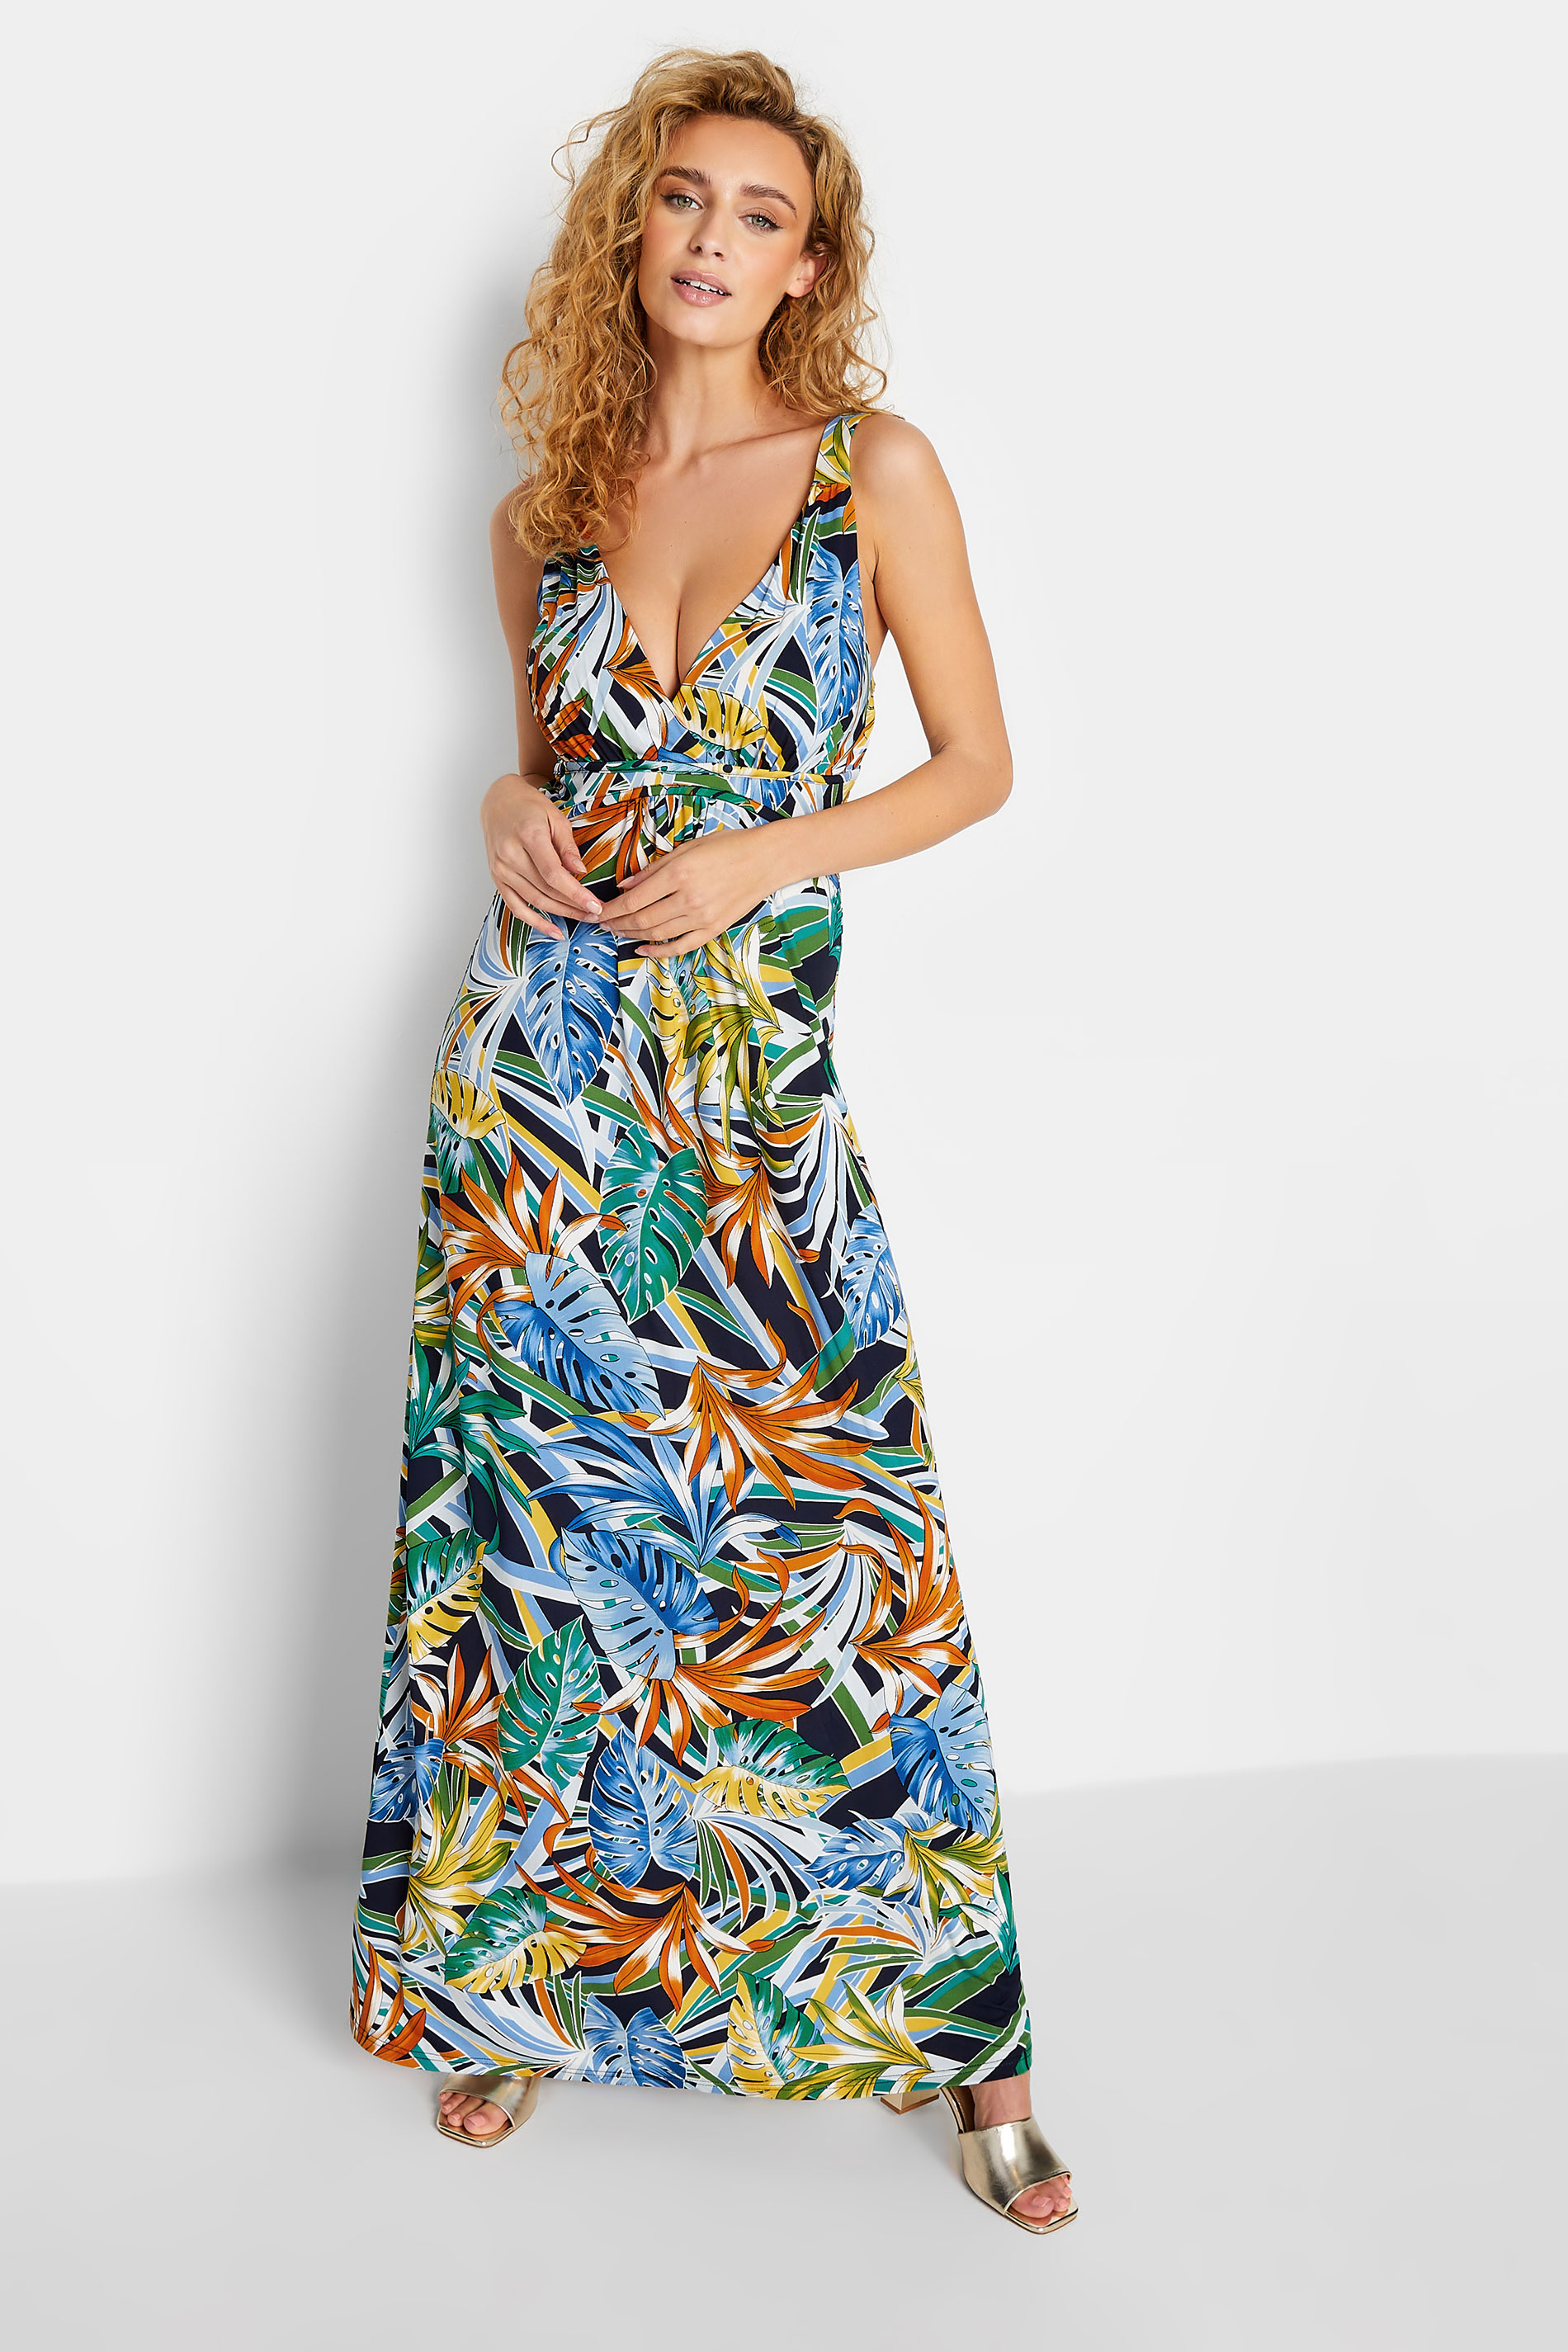 LTS Tall Green Palm Leaf Print Maxi Dress | Long Tall Sally  1